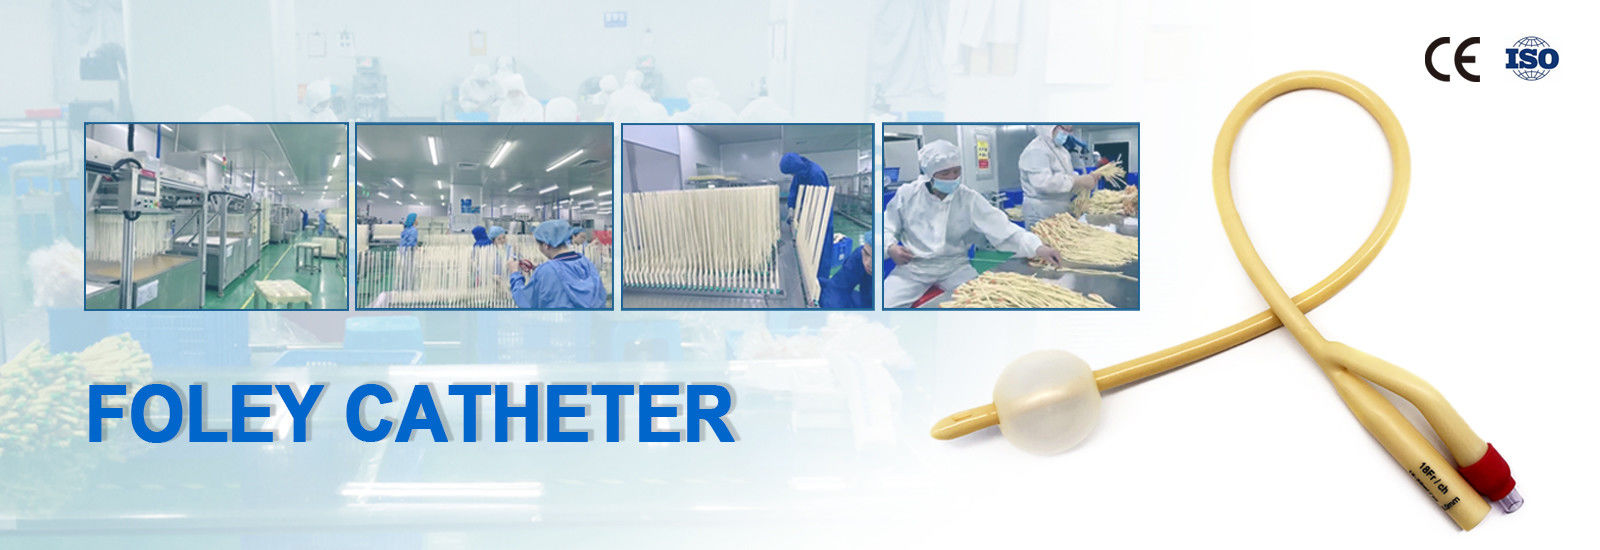 kwaliteit De Catheter van latexfoley fabriek